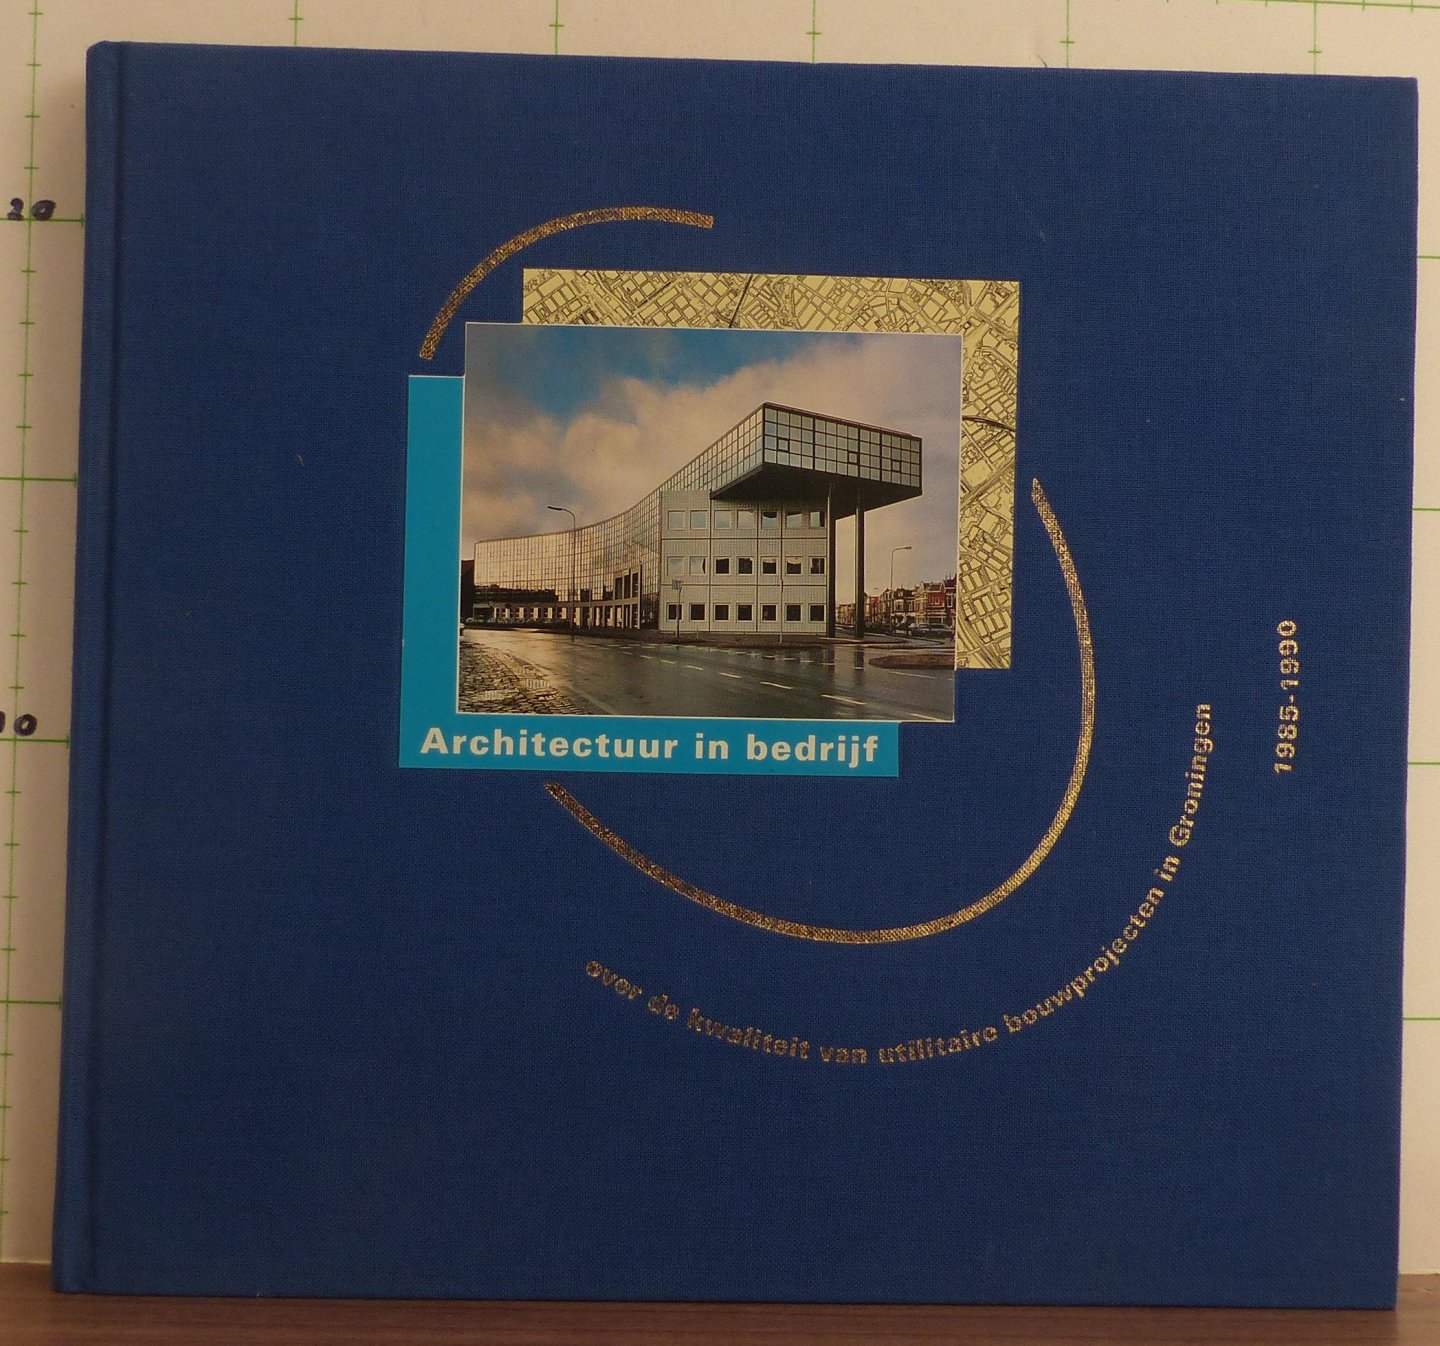 (voorw.) Heyning, H.Ch.M. - Tichelaar, S.H. - Architectuur in bedrijf, over de kwaliteit van utilitaire bouwprojecten in Groningen 1985 - 1990